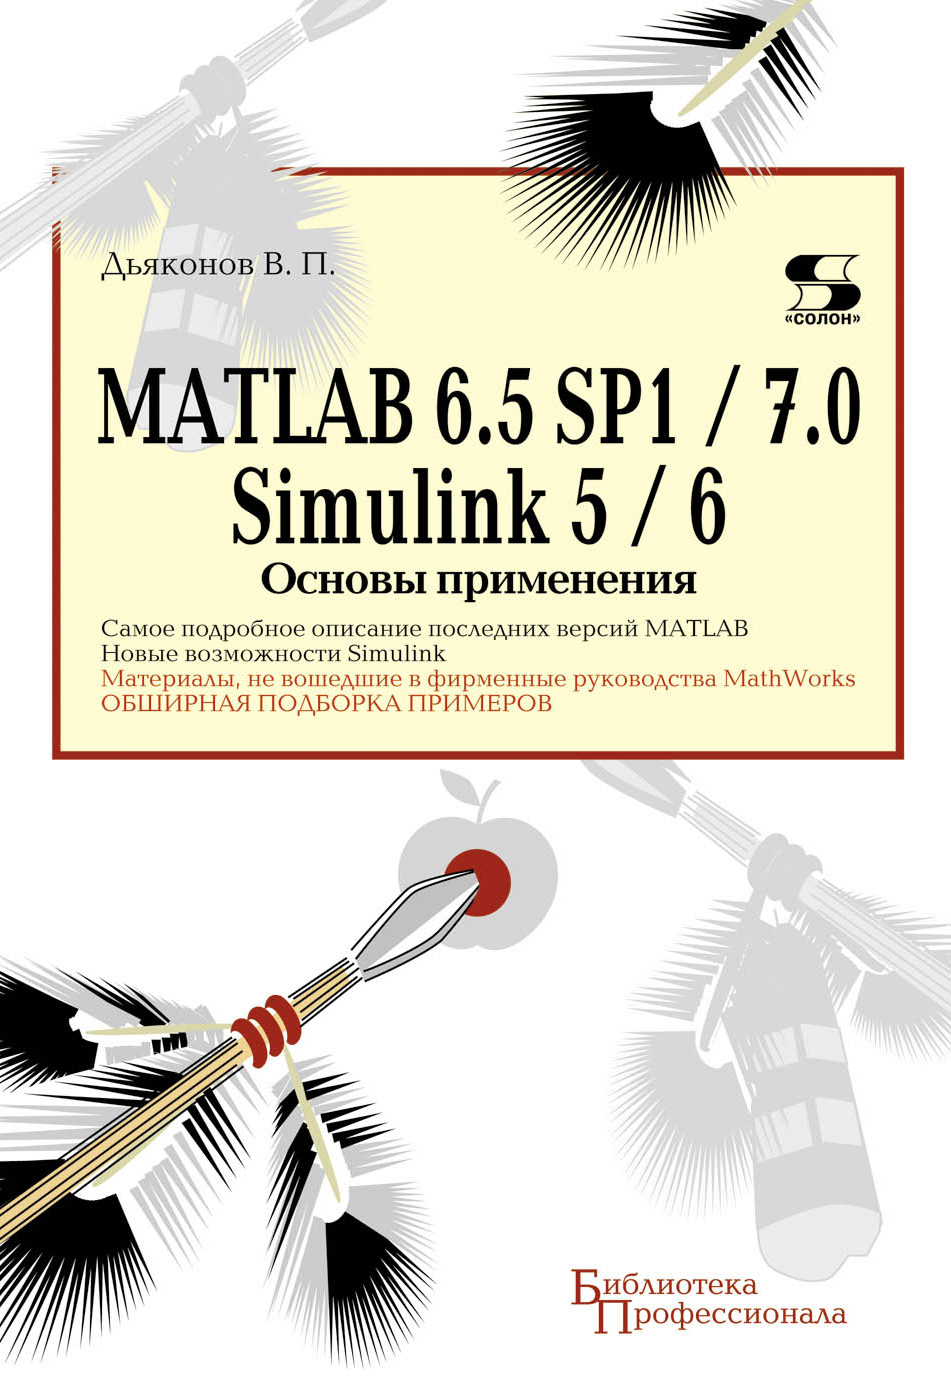 Книга Библиотека профессионала (Солон-пресс), MATLAB 6.5 SP1/7.0 + Simulink 5/6 MATLAB 6.5 SP1/7.0 + Simulink 5/6. Основы применения созданная В. П. Дьяконов может относится к жанру программы, справочная литература, техническая литература. Стоимость электронной книги MATLAB 6.5 SP1/7.0 + Simulink 5/6. Основы применения с идентификатором 8337282 составляет 450.00 руб.